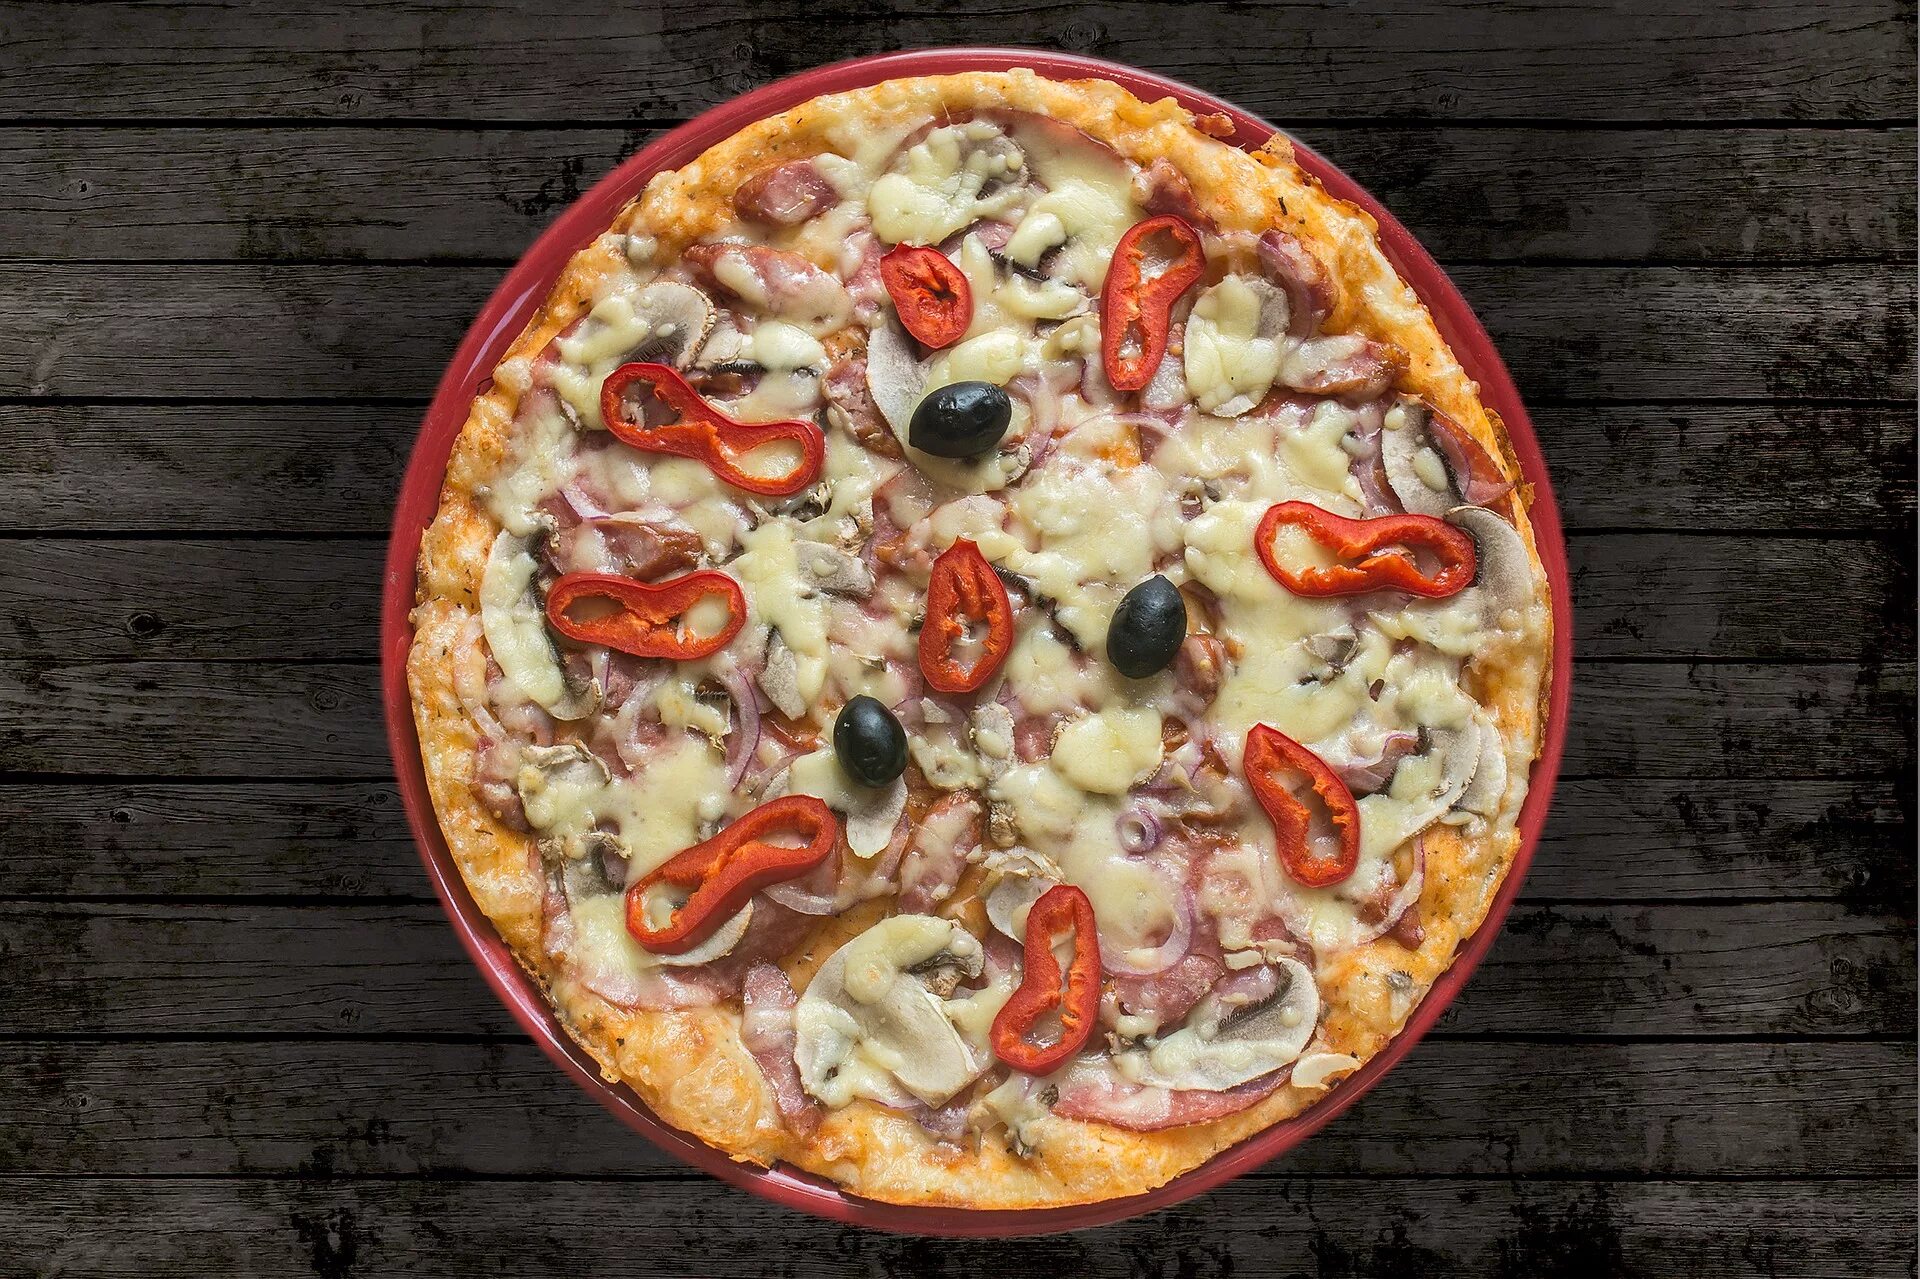 Окто пицца. "Пицца". Итальянская пицца. Рицца. Пицца вид сверху.